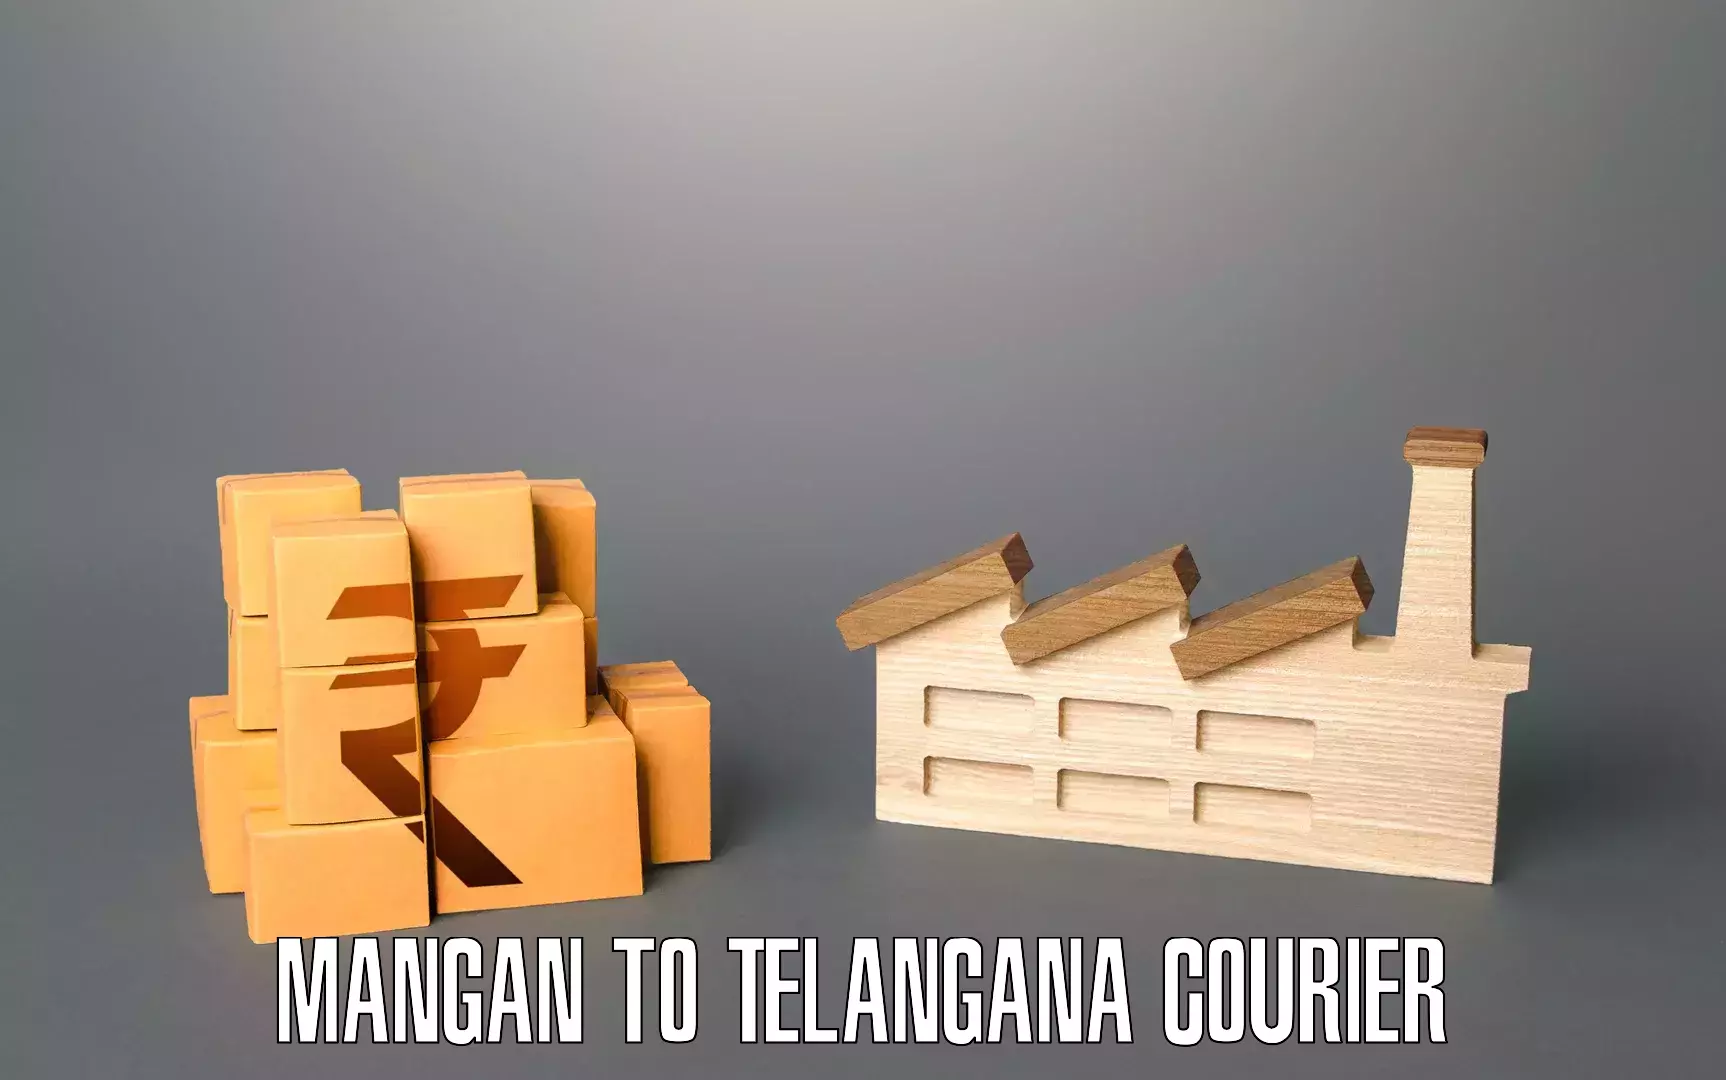 Furniture logistics Mangan to Kaghaznagar